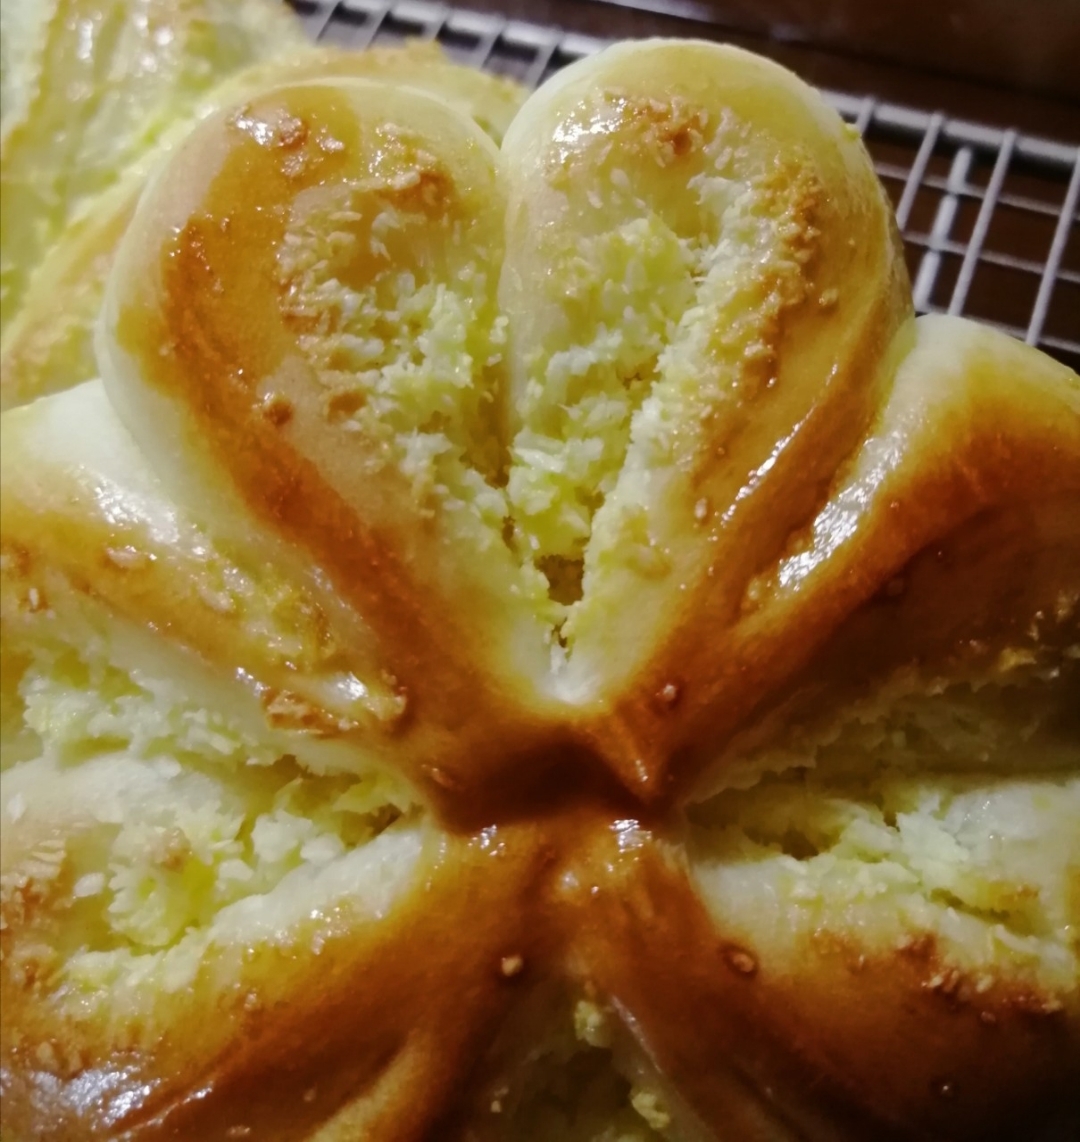 幸运四叶草椰蓉面包|每一瓣都是爱你的形状|香甜小面包